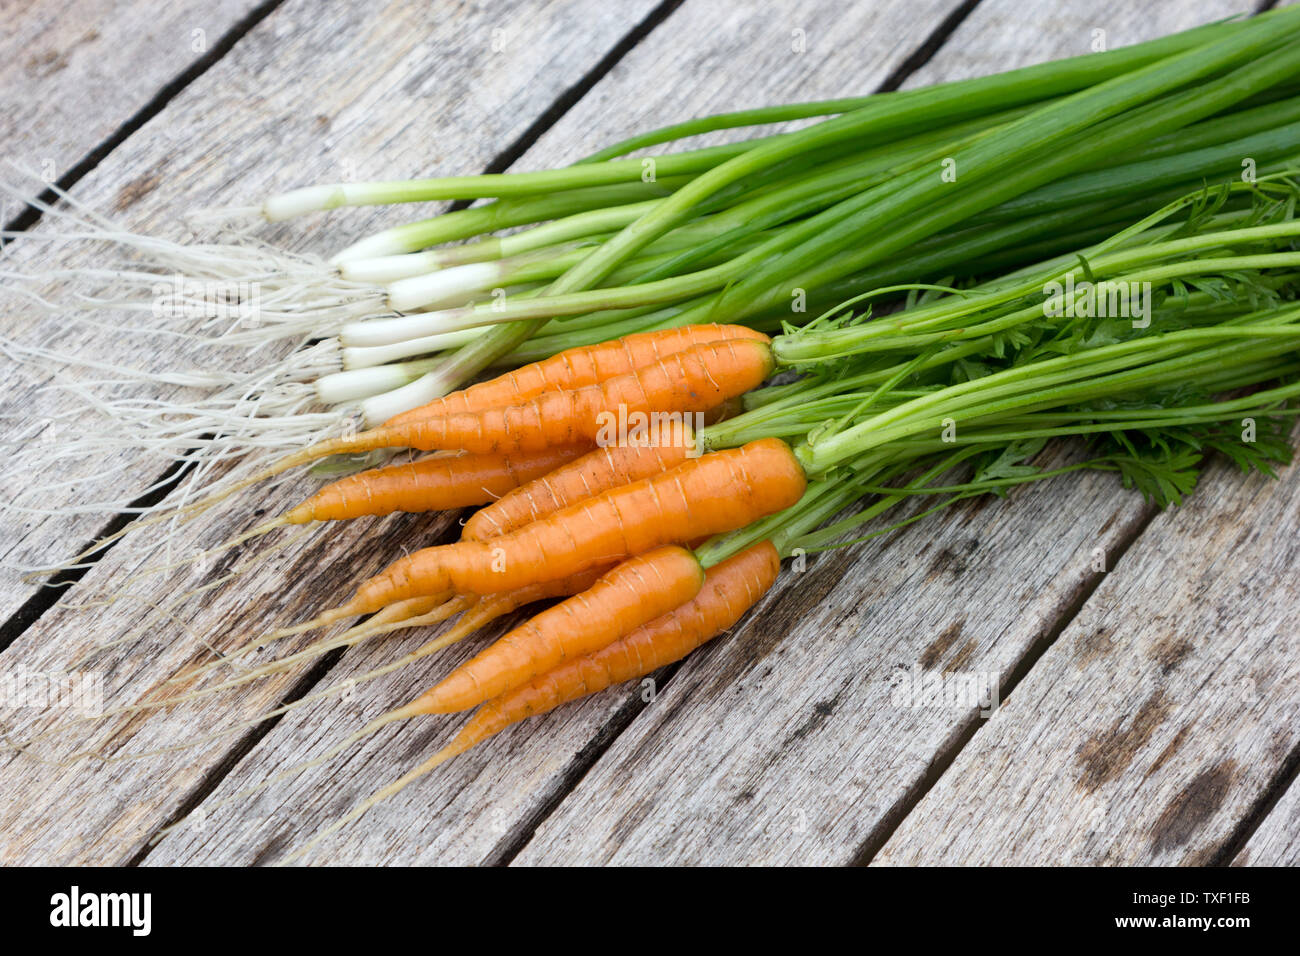 Salade de carottes et oignons sur un dessus de table Banque D'Images